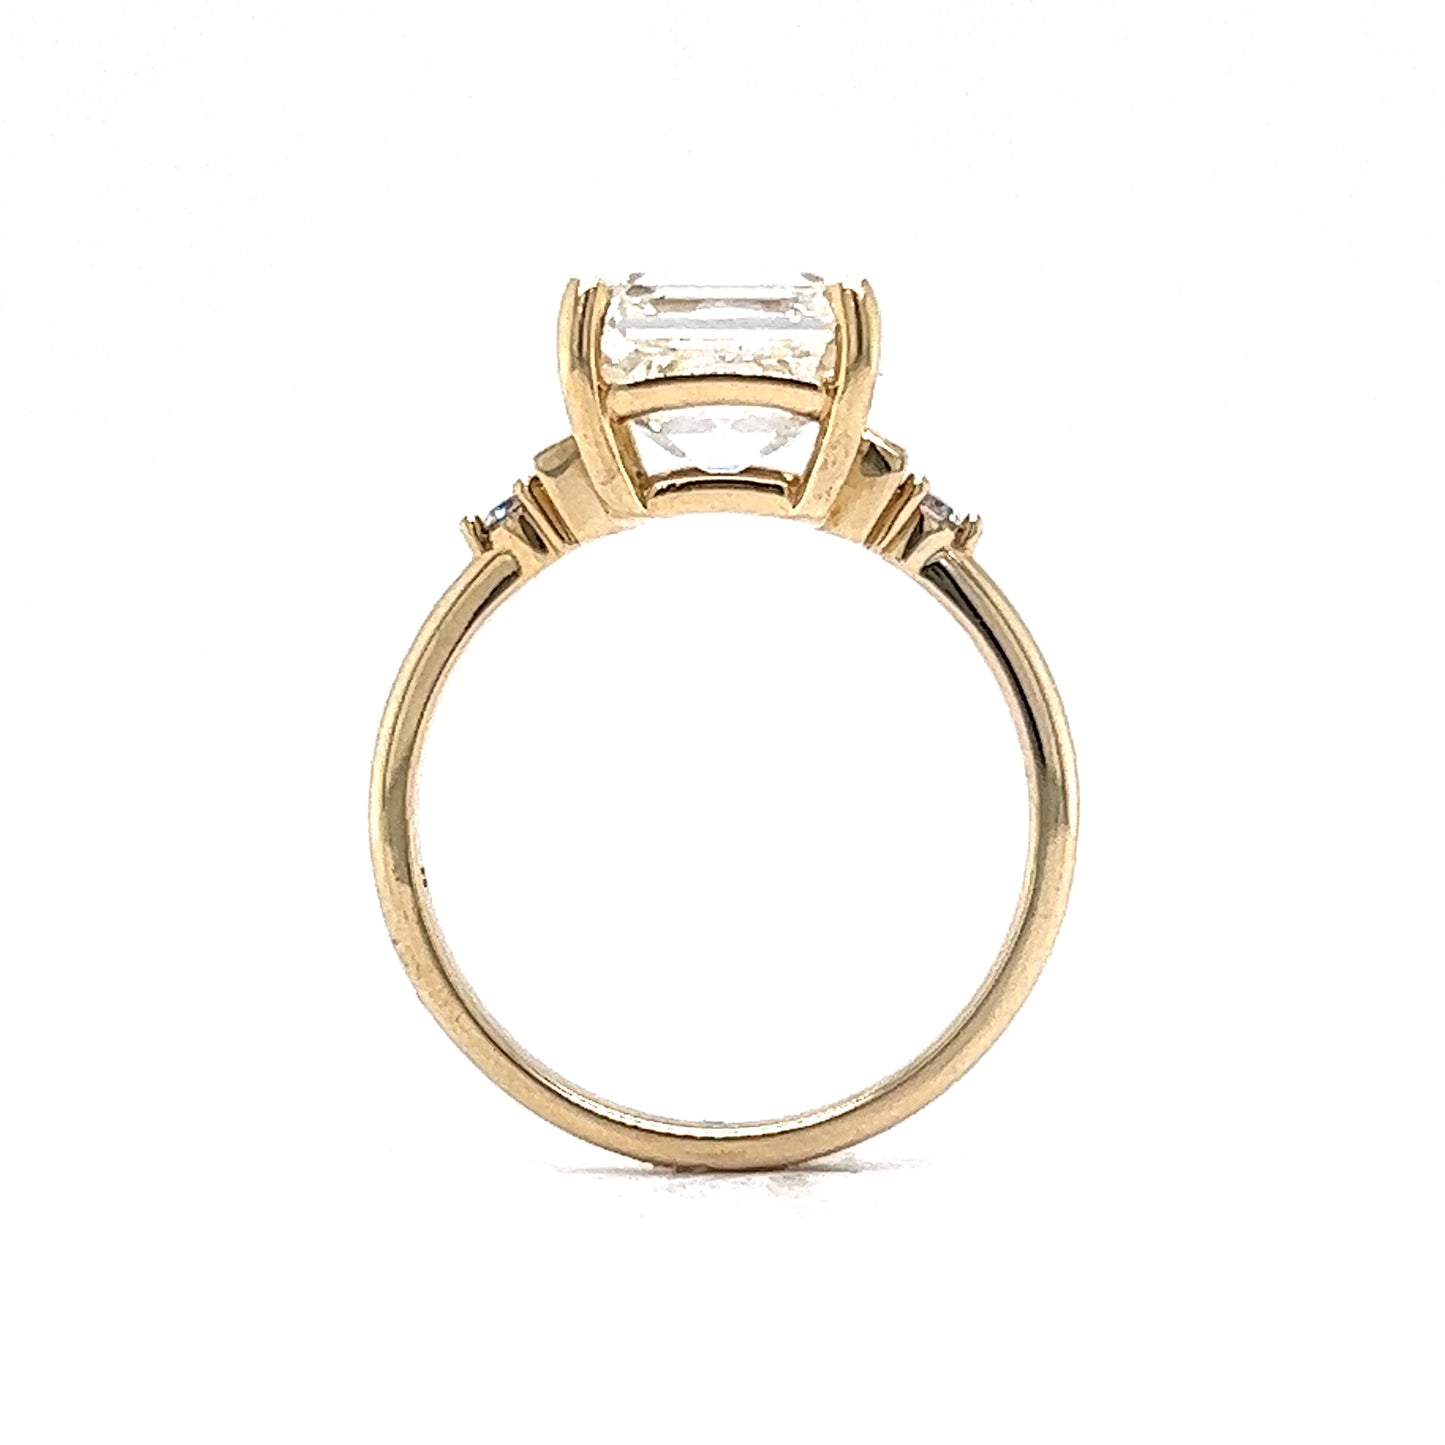 4.01 GIA Asscher Cut Diamond Engagement Ring in 14k Yellow Gold